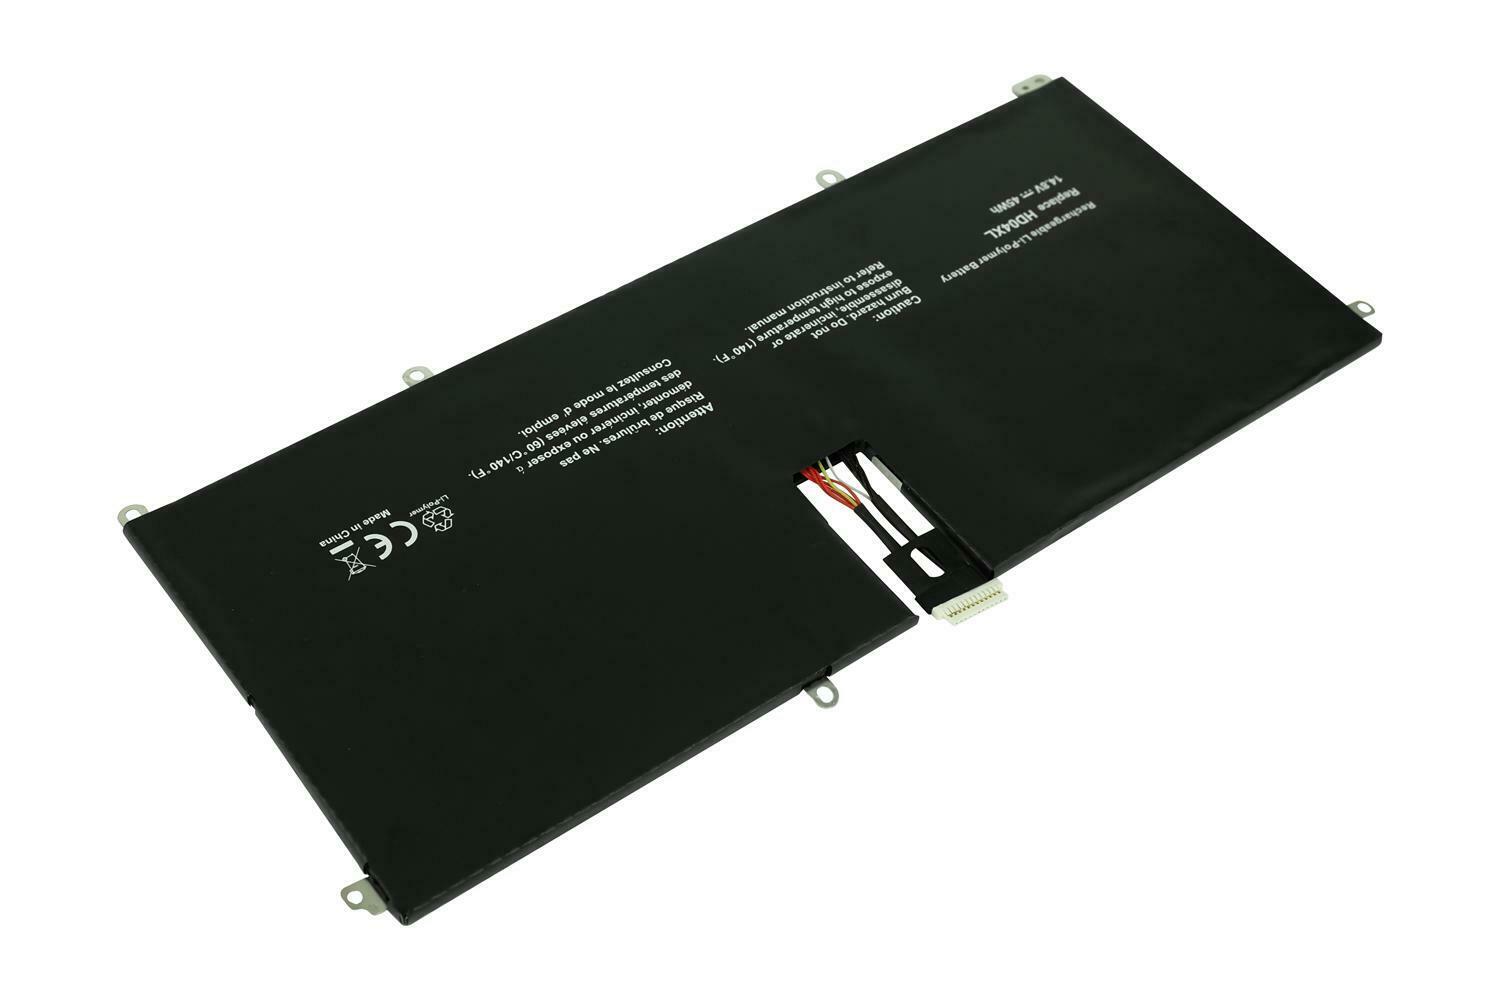 Batteri til HD04XL HSTNN-IB3V 685989-001 HP SPECTRE XT 13 B000 2113TU 2023TU (kompatibelt)